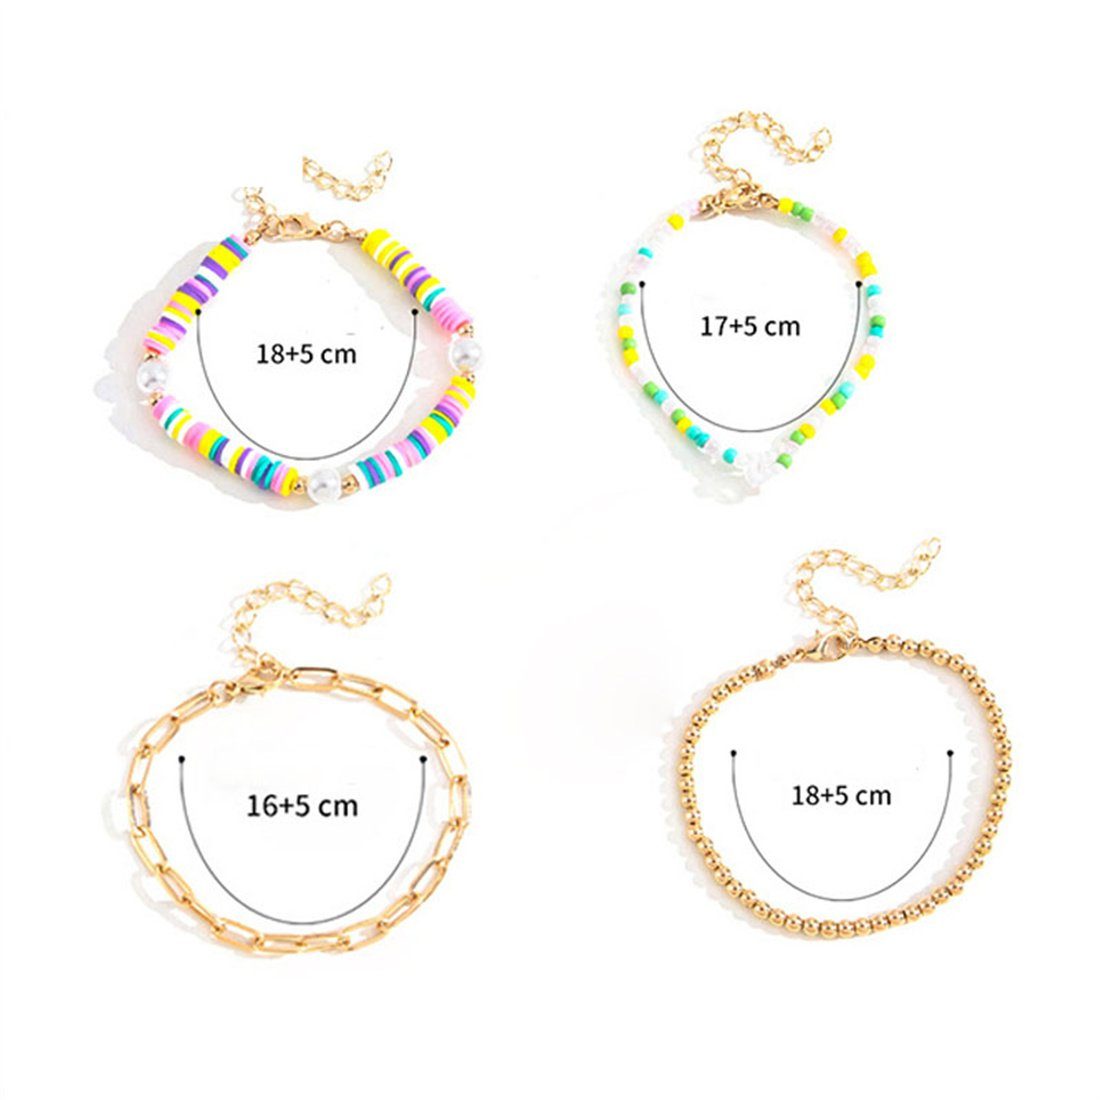 DÖRÖY Armband Buntes Perlenarmband-Set für Mädchenarmbänder Frauen, 4er-Set